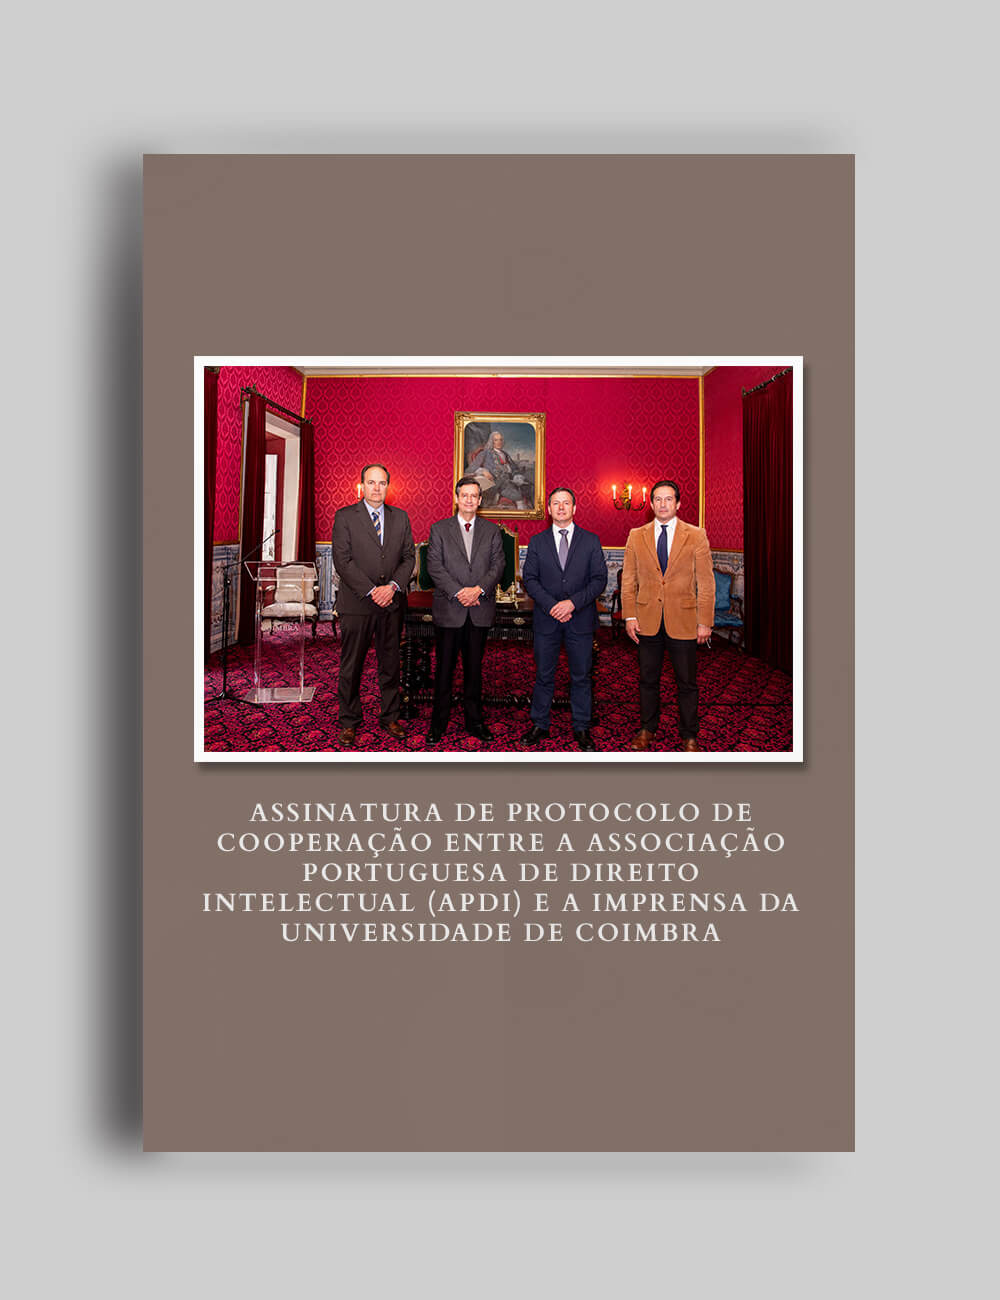 Assinatura de Protocolo de Cooperação entre a Associação Portuguesa de Direito Intelectual (APDI) e a Imprensa da Universidade de Coimbra